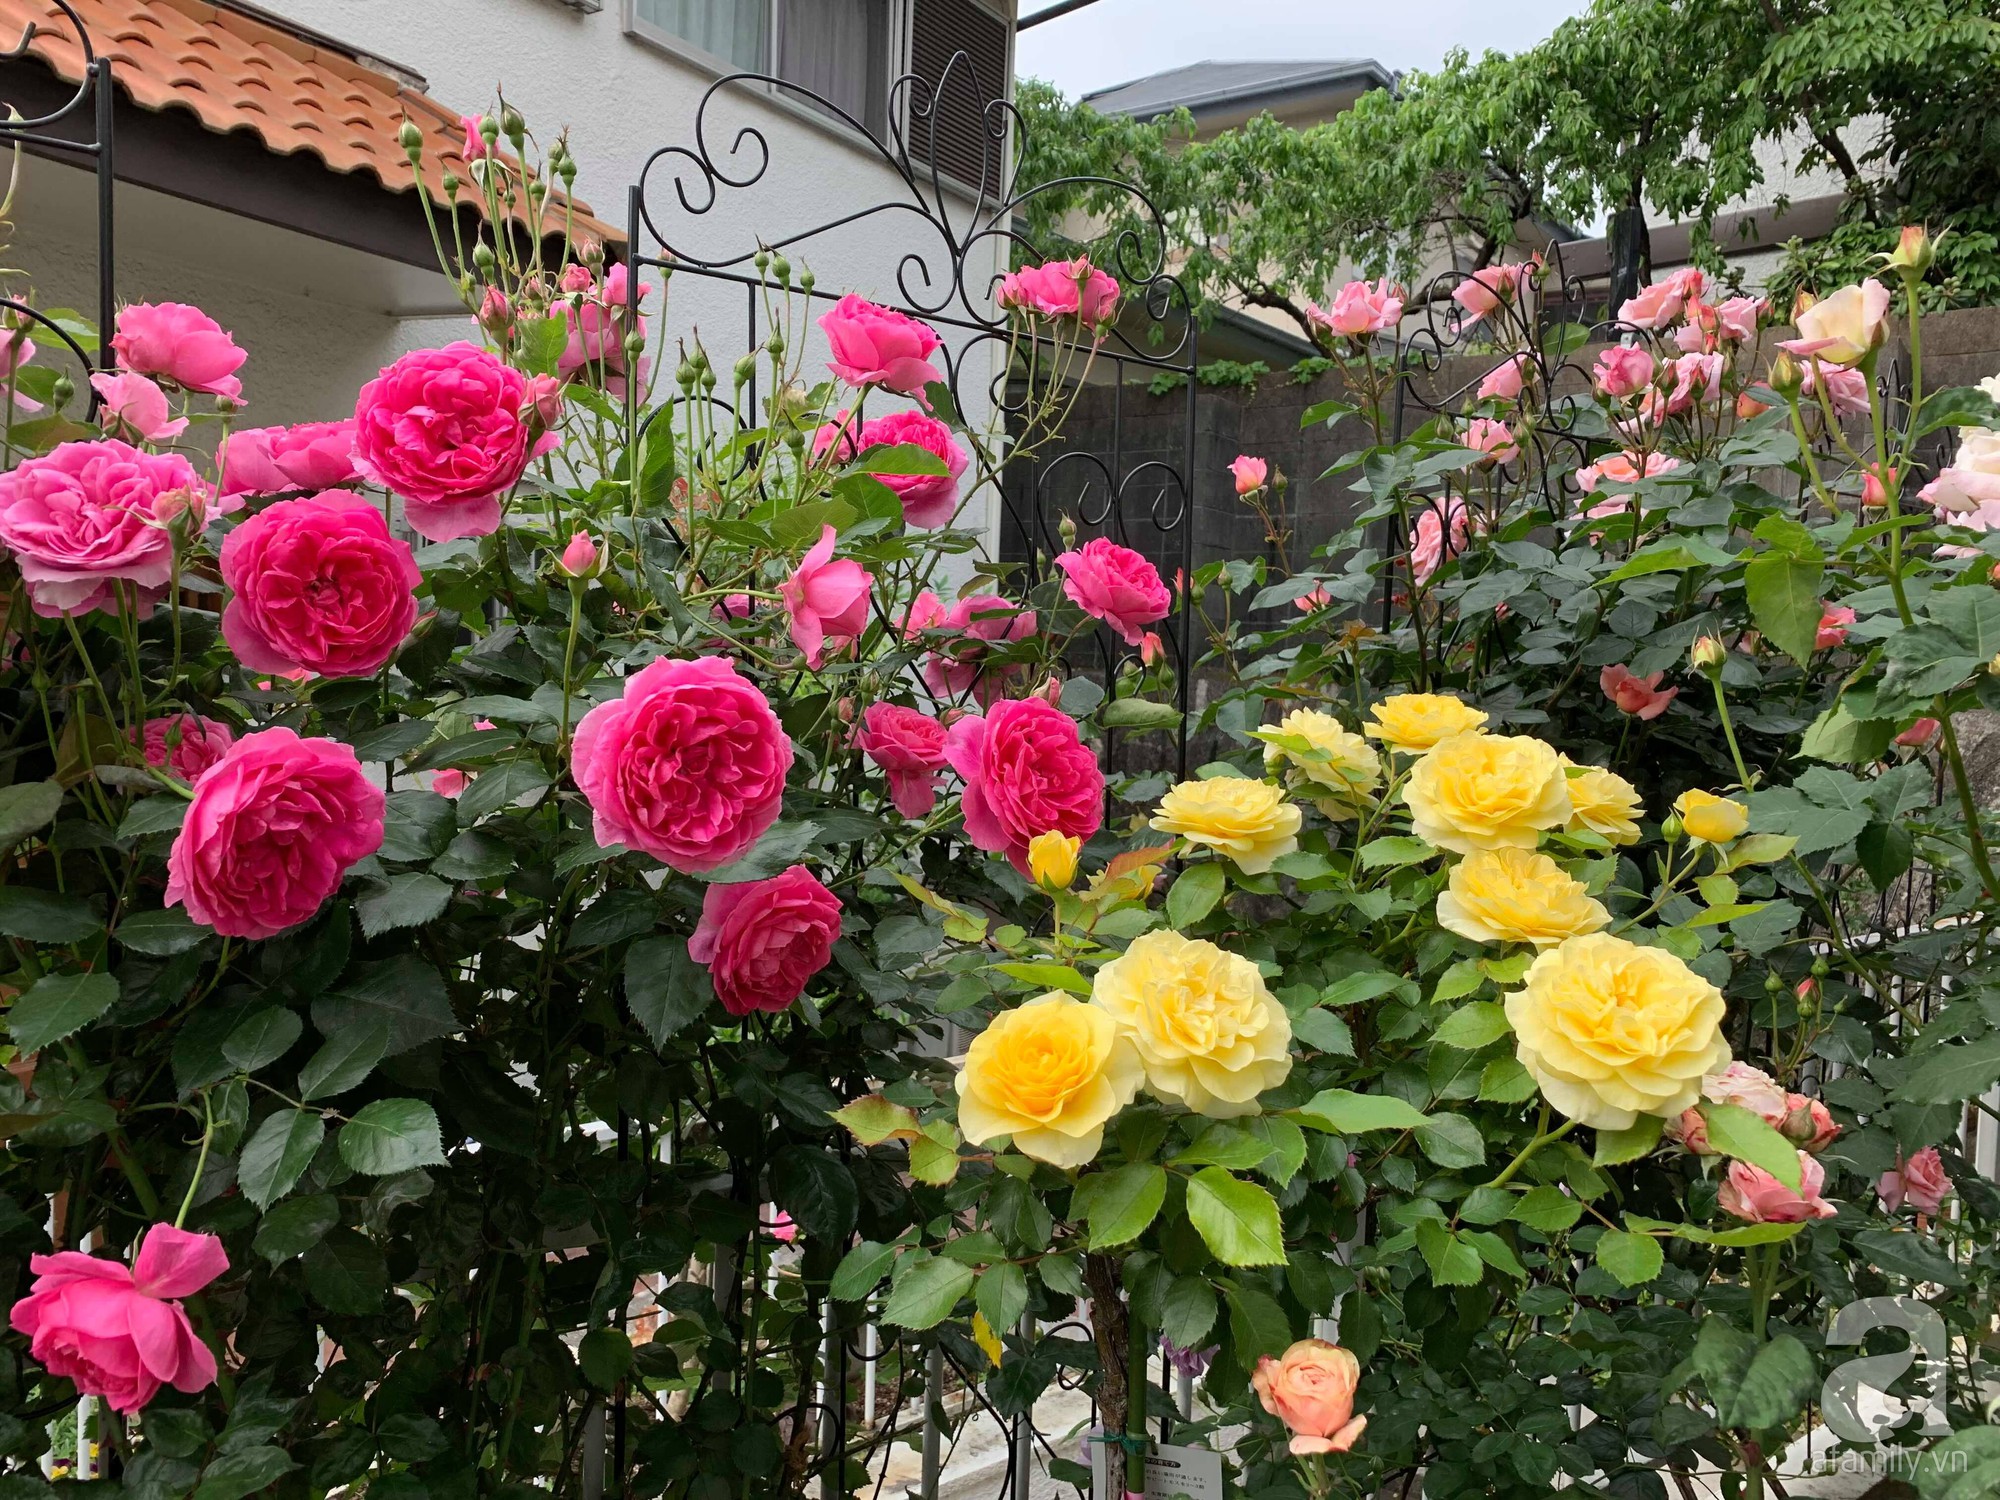 Góc vườn 20m² thơm ngát hoa hồng đủ loại của nữ giám đốc Việt ở Nhật Bản - Ảnh 16.